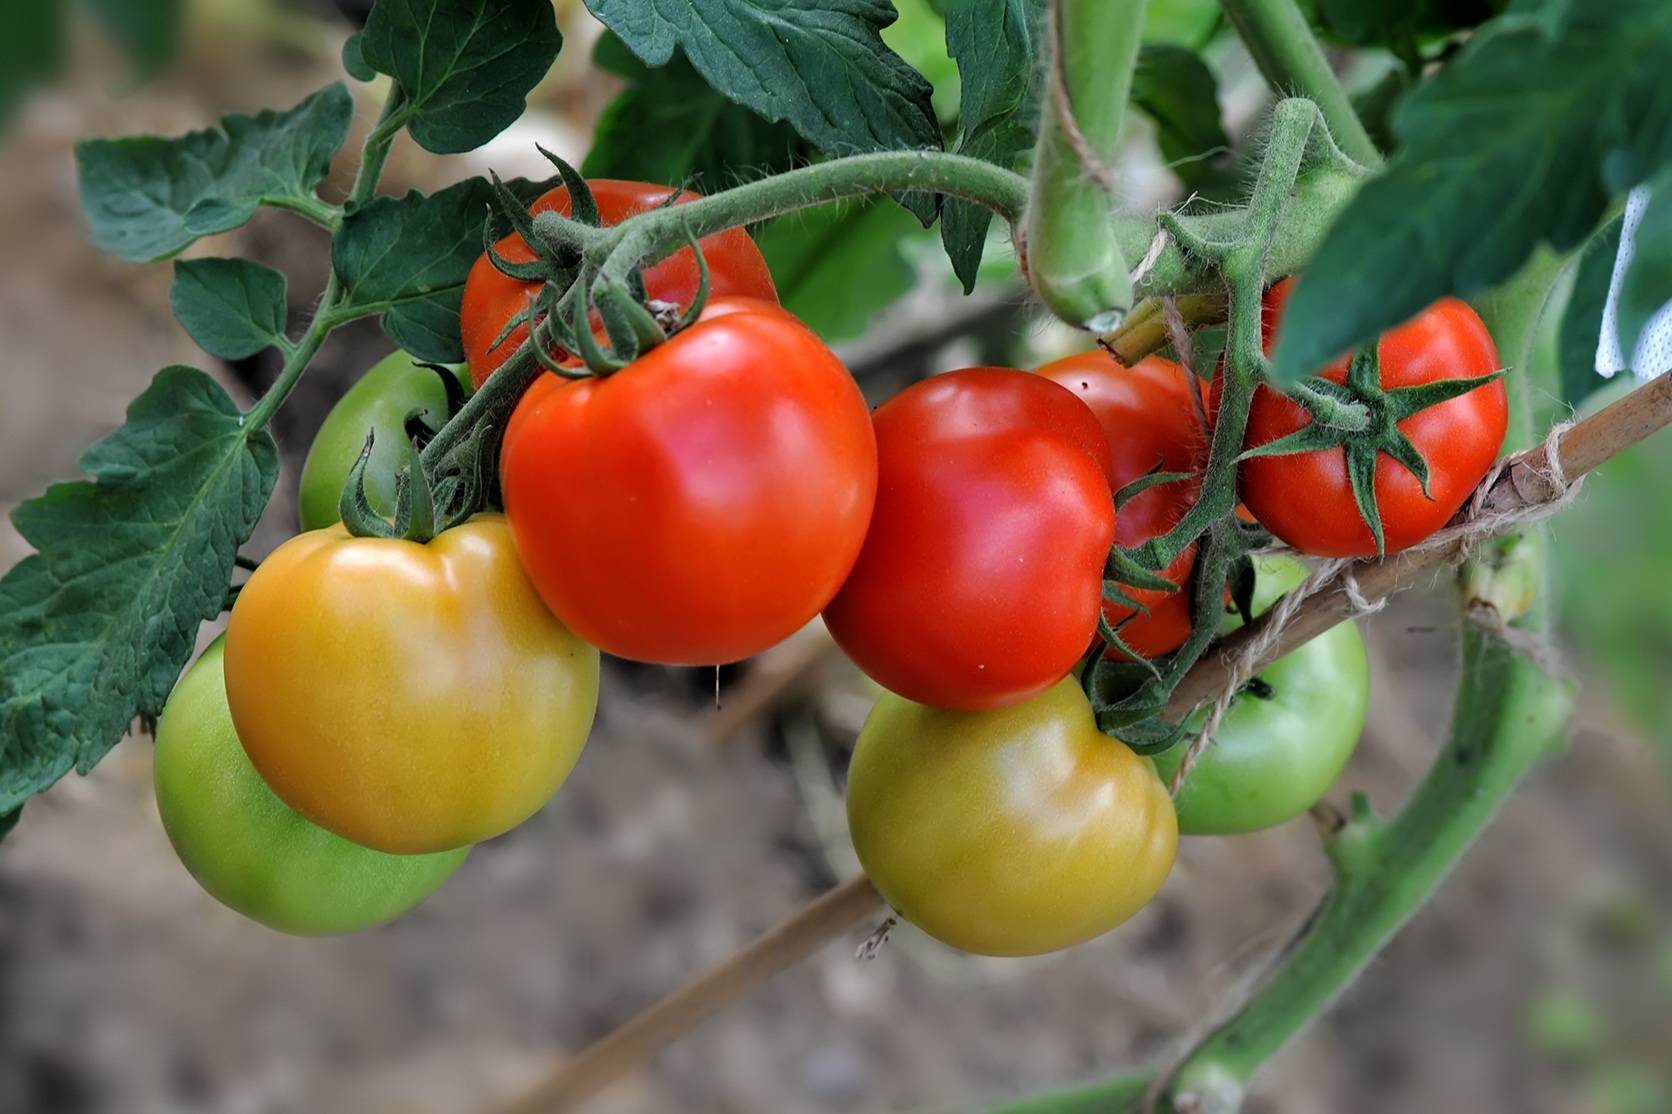 Описание лучших семян самоопыляемых сортов помидоров для теплицы